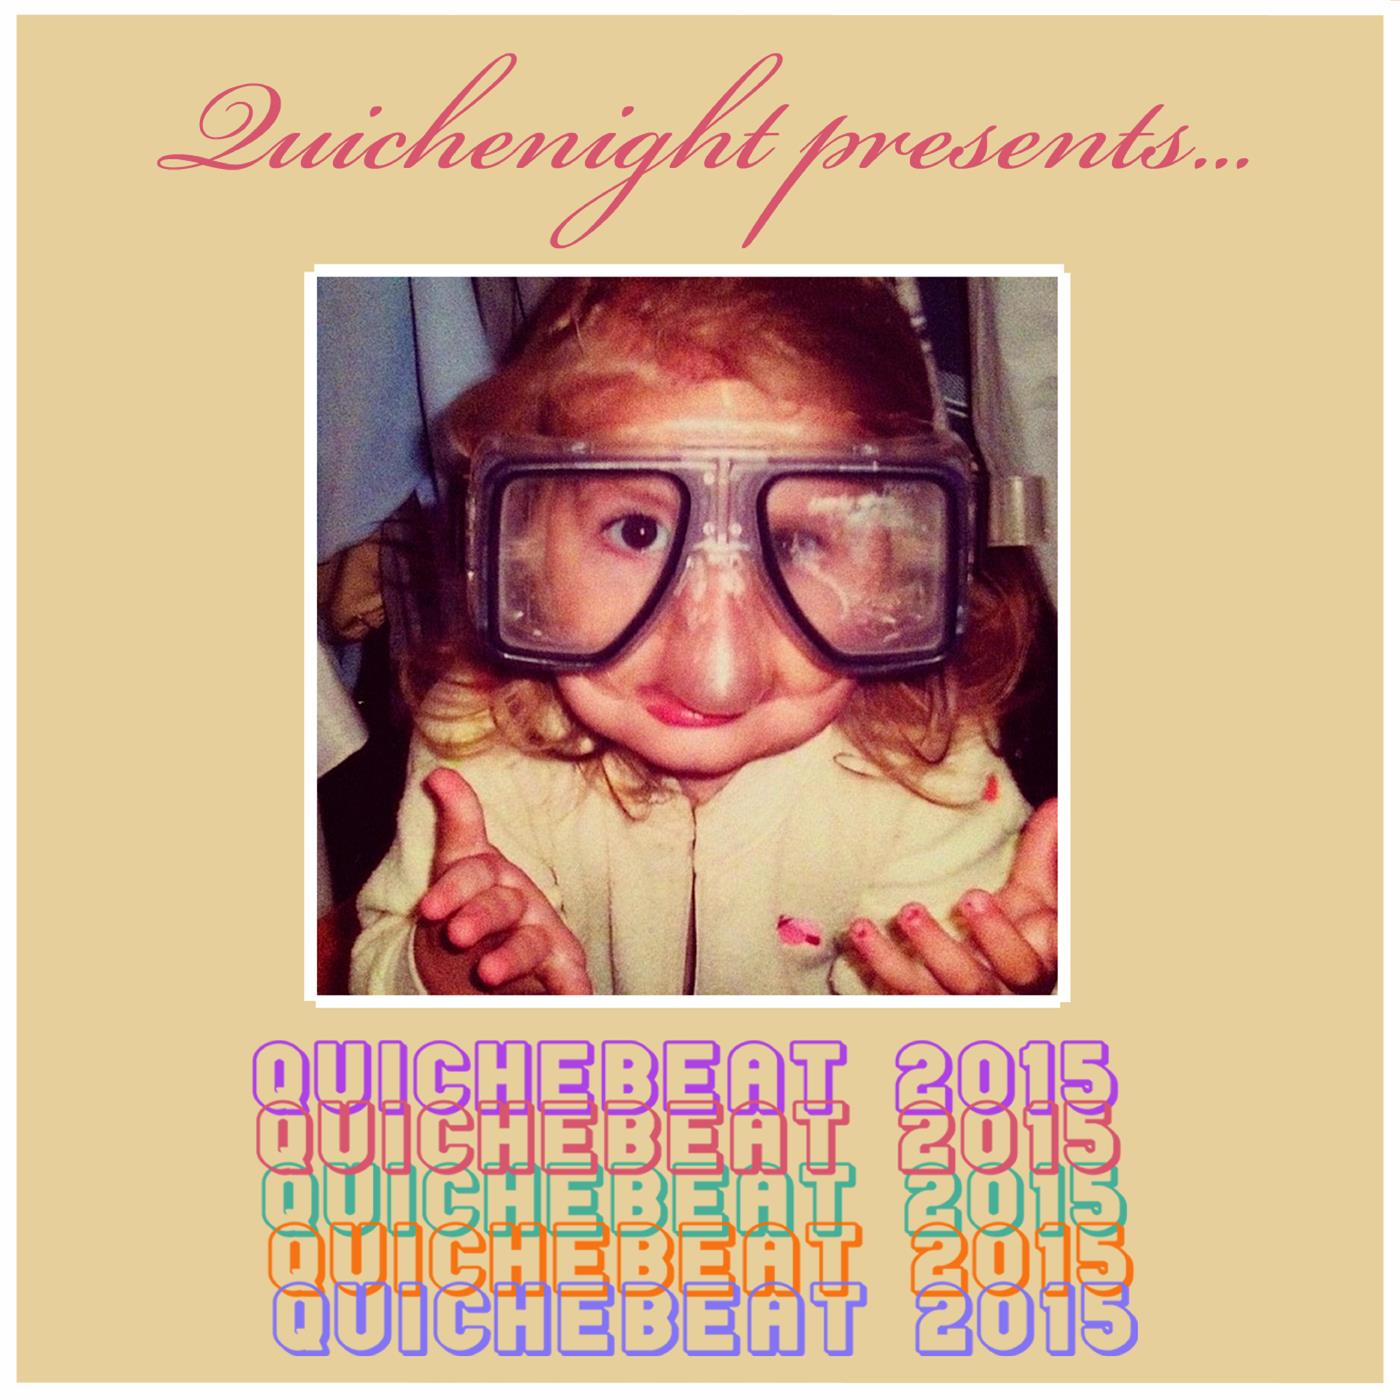 Quichebeat 2015